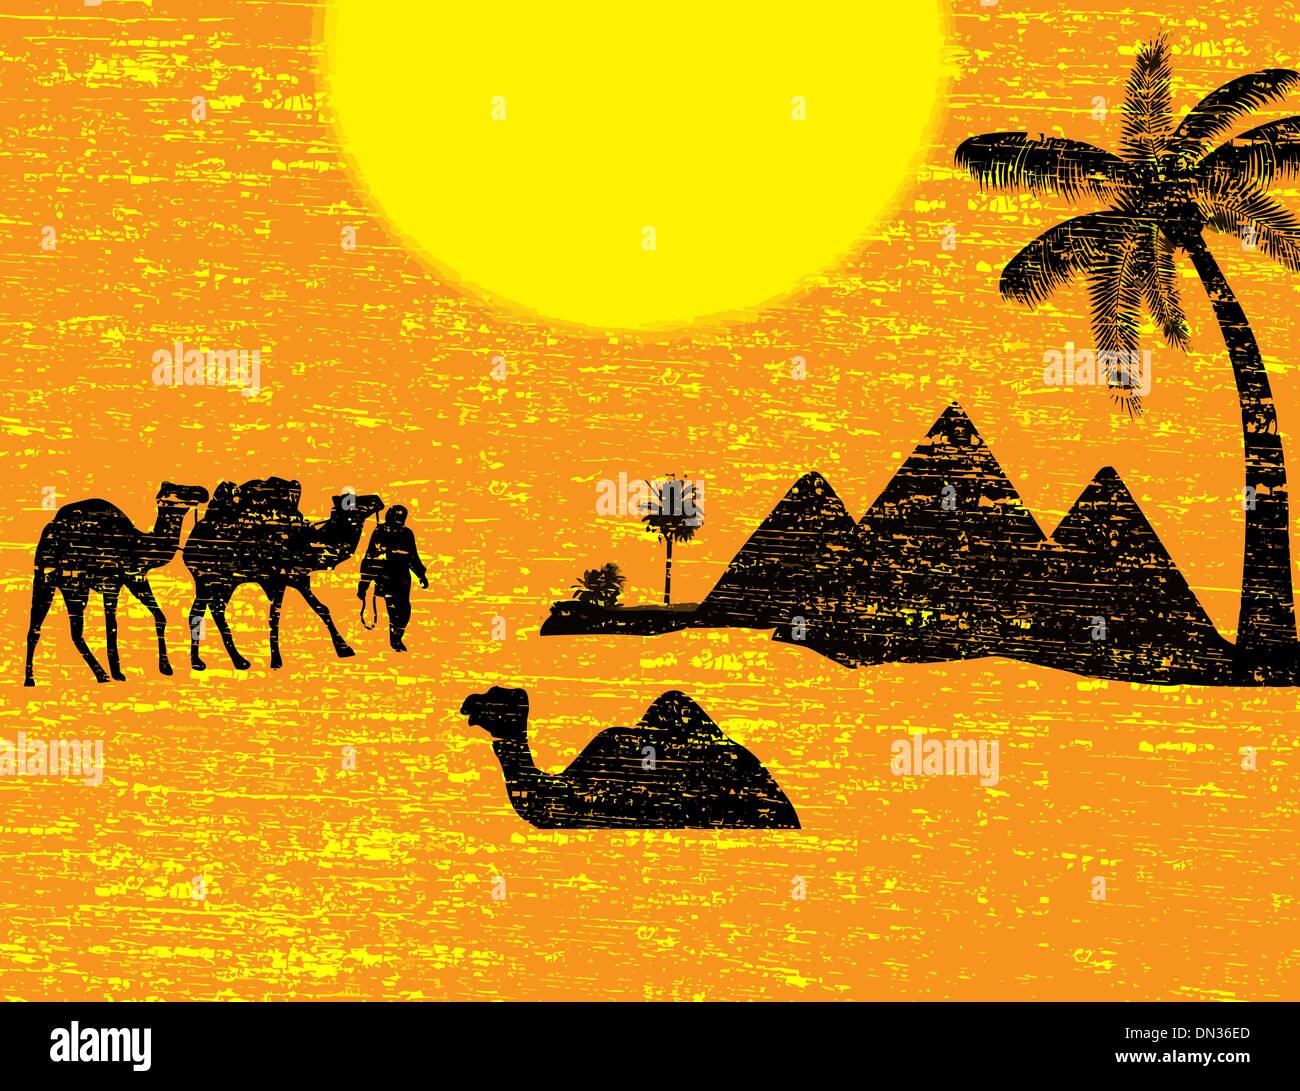 Caravane de chameaux bédouin Illustration de Vecteur